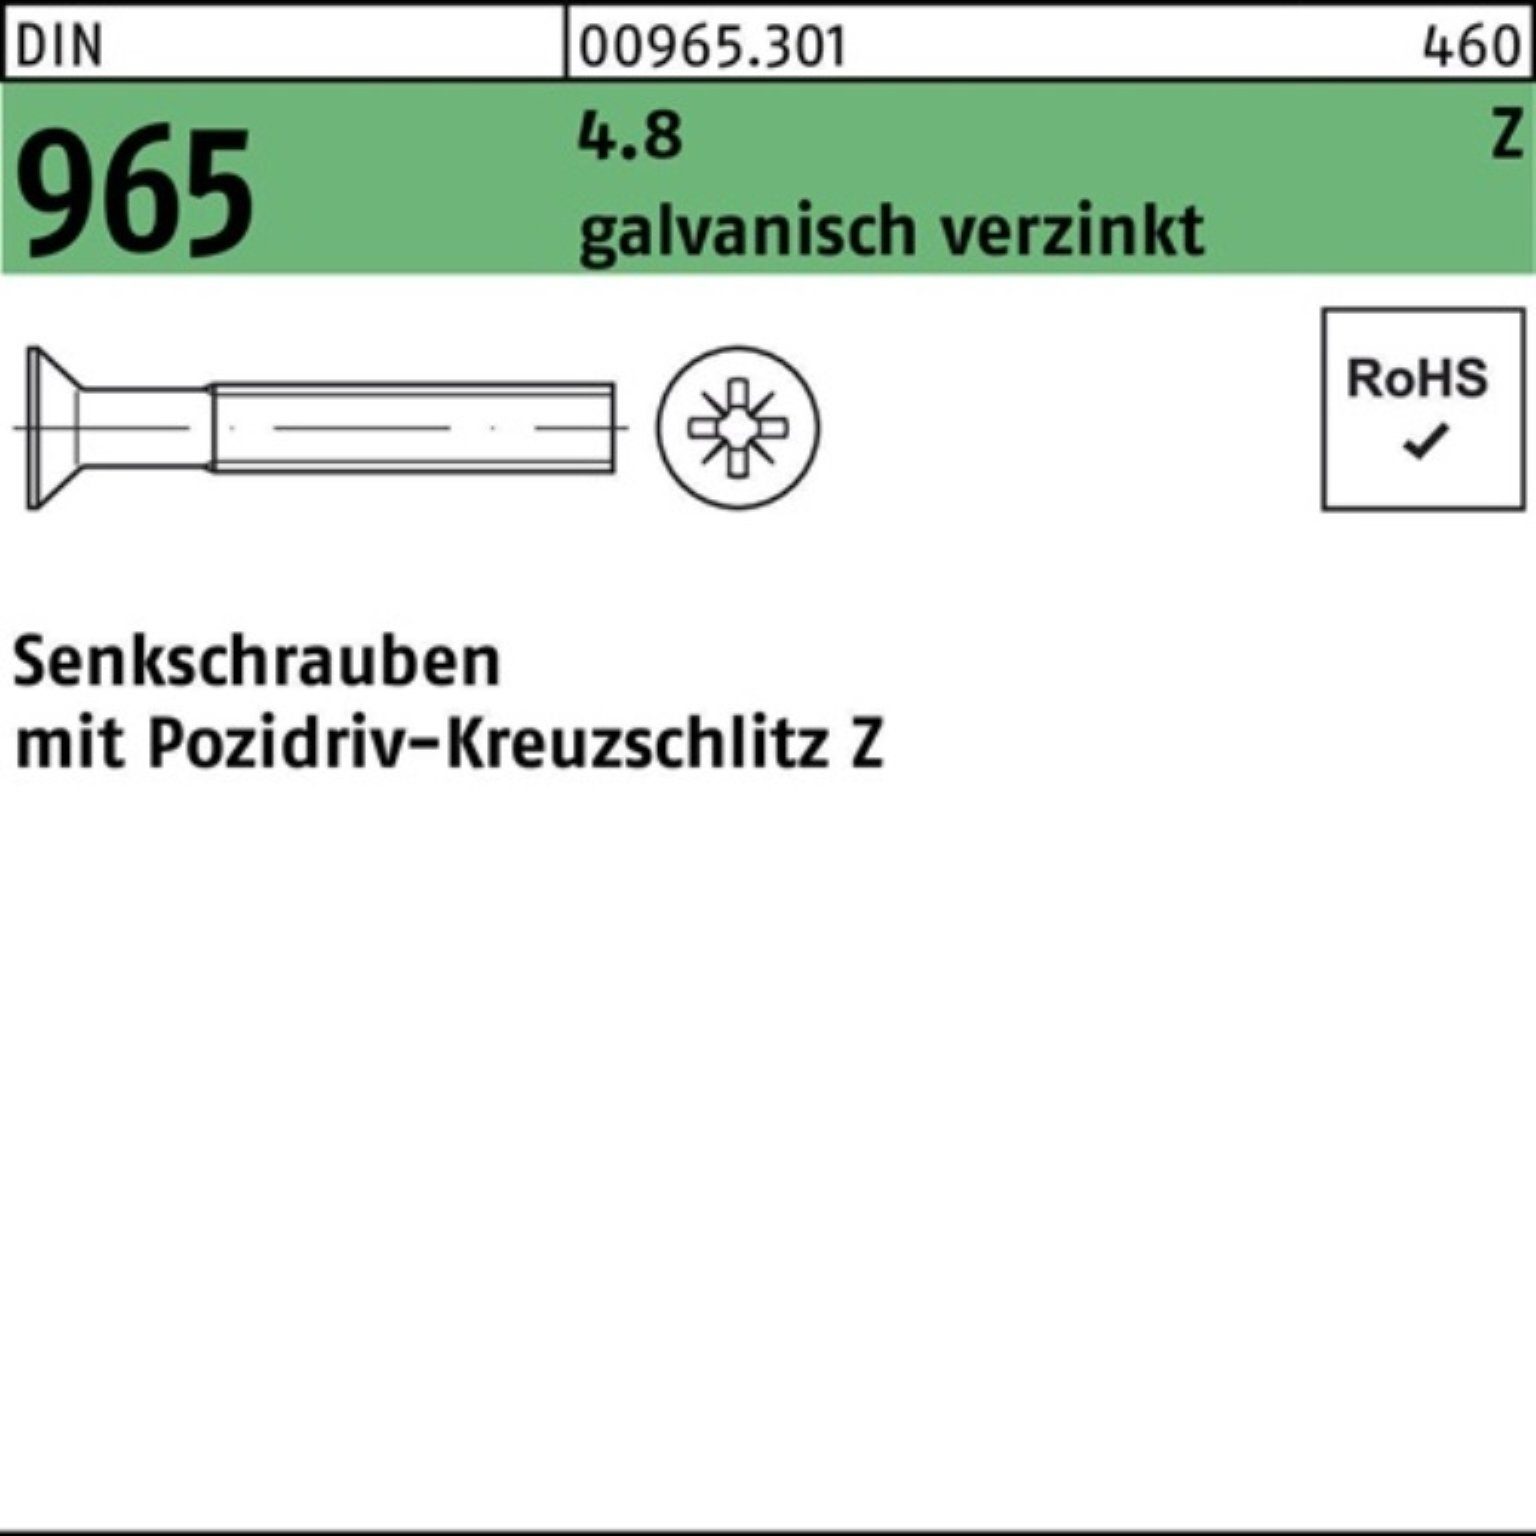 Reyher Senkschraube 200er Senkschraube PZ 70-Z 200St. DIN M5x Pack 965 galv.verz. 4.8 DIN